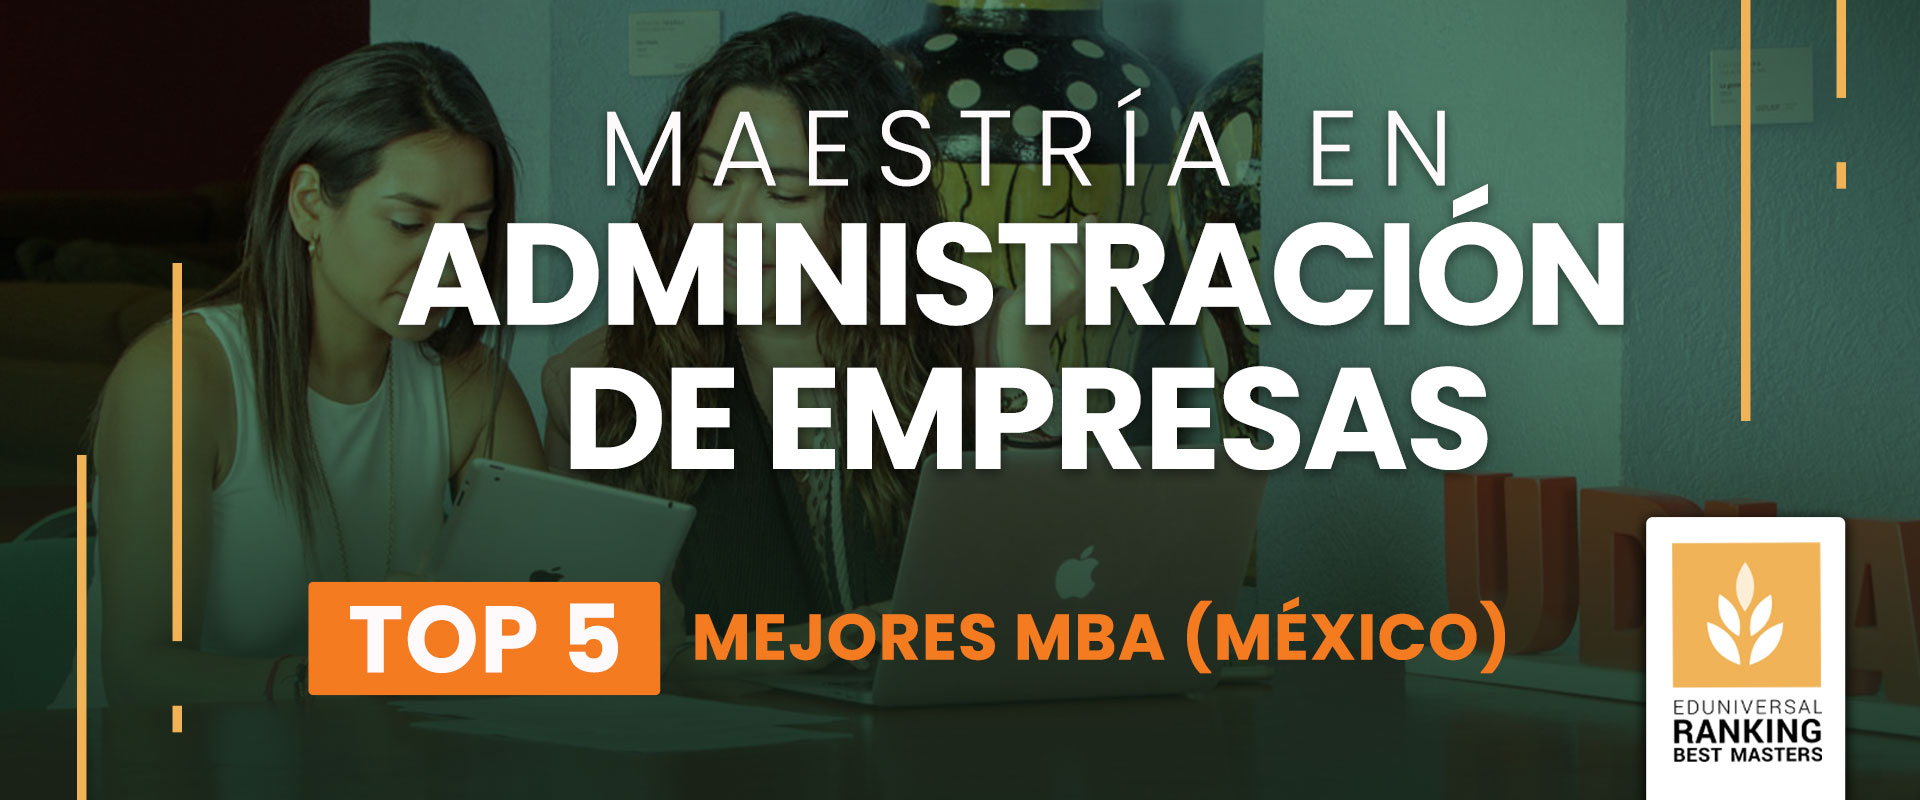 Maestría en Administración de Empresas - Universidad de las Américas Puebla (UDLAP)